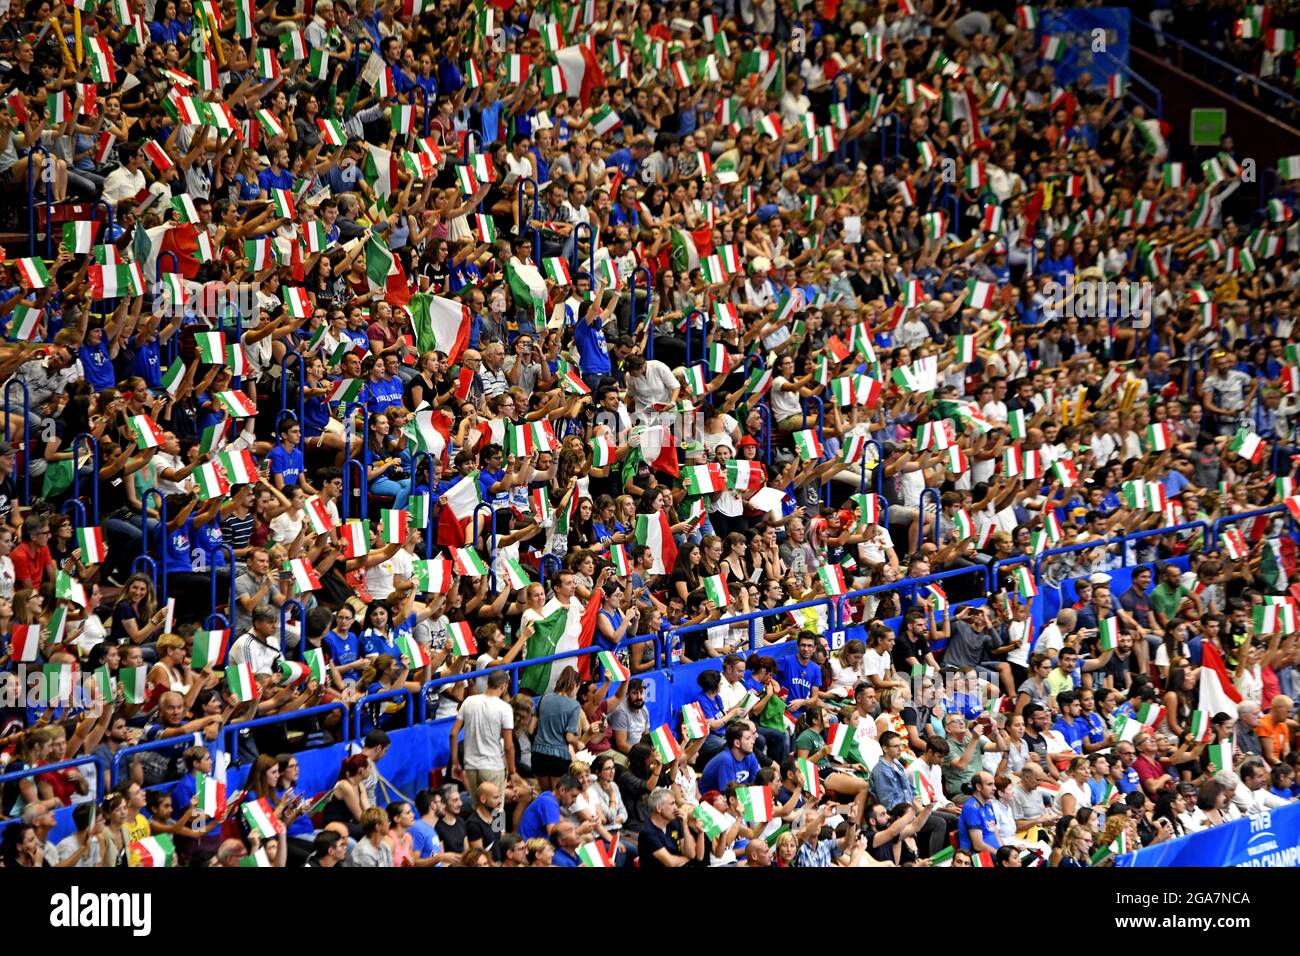 Les fans italiens applaudissent et agite des drapeaux italiens dans l'arène du Forum intérieur, lors du Championnat du monde de volley-ball masculin, à Milan. Banque D'Images